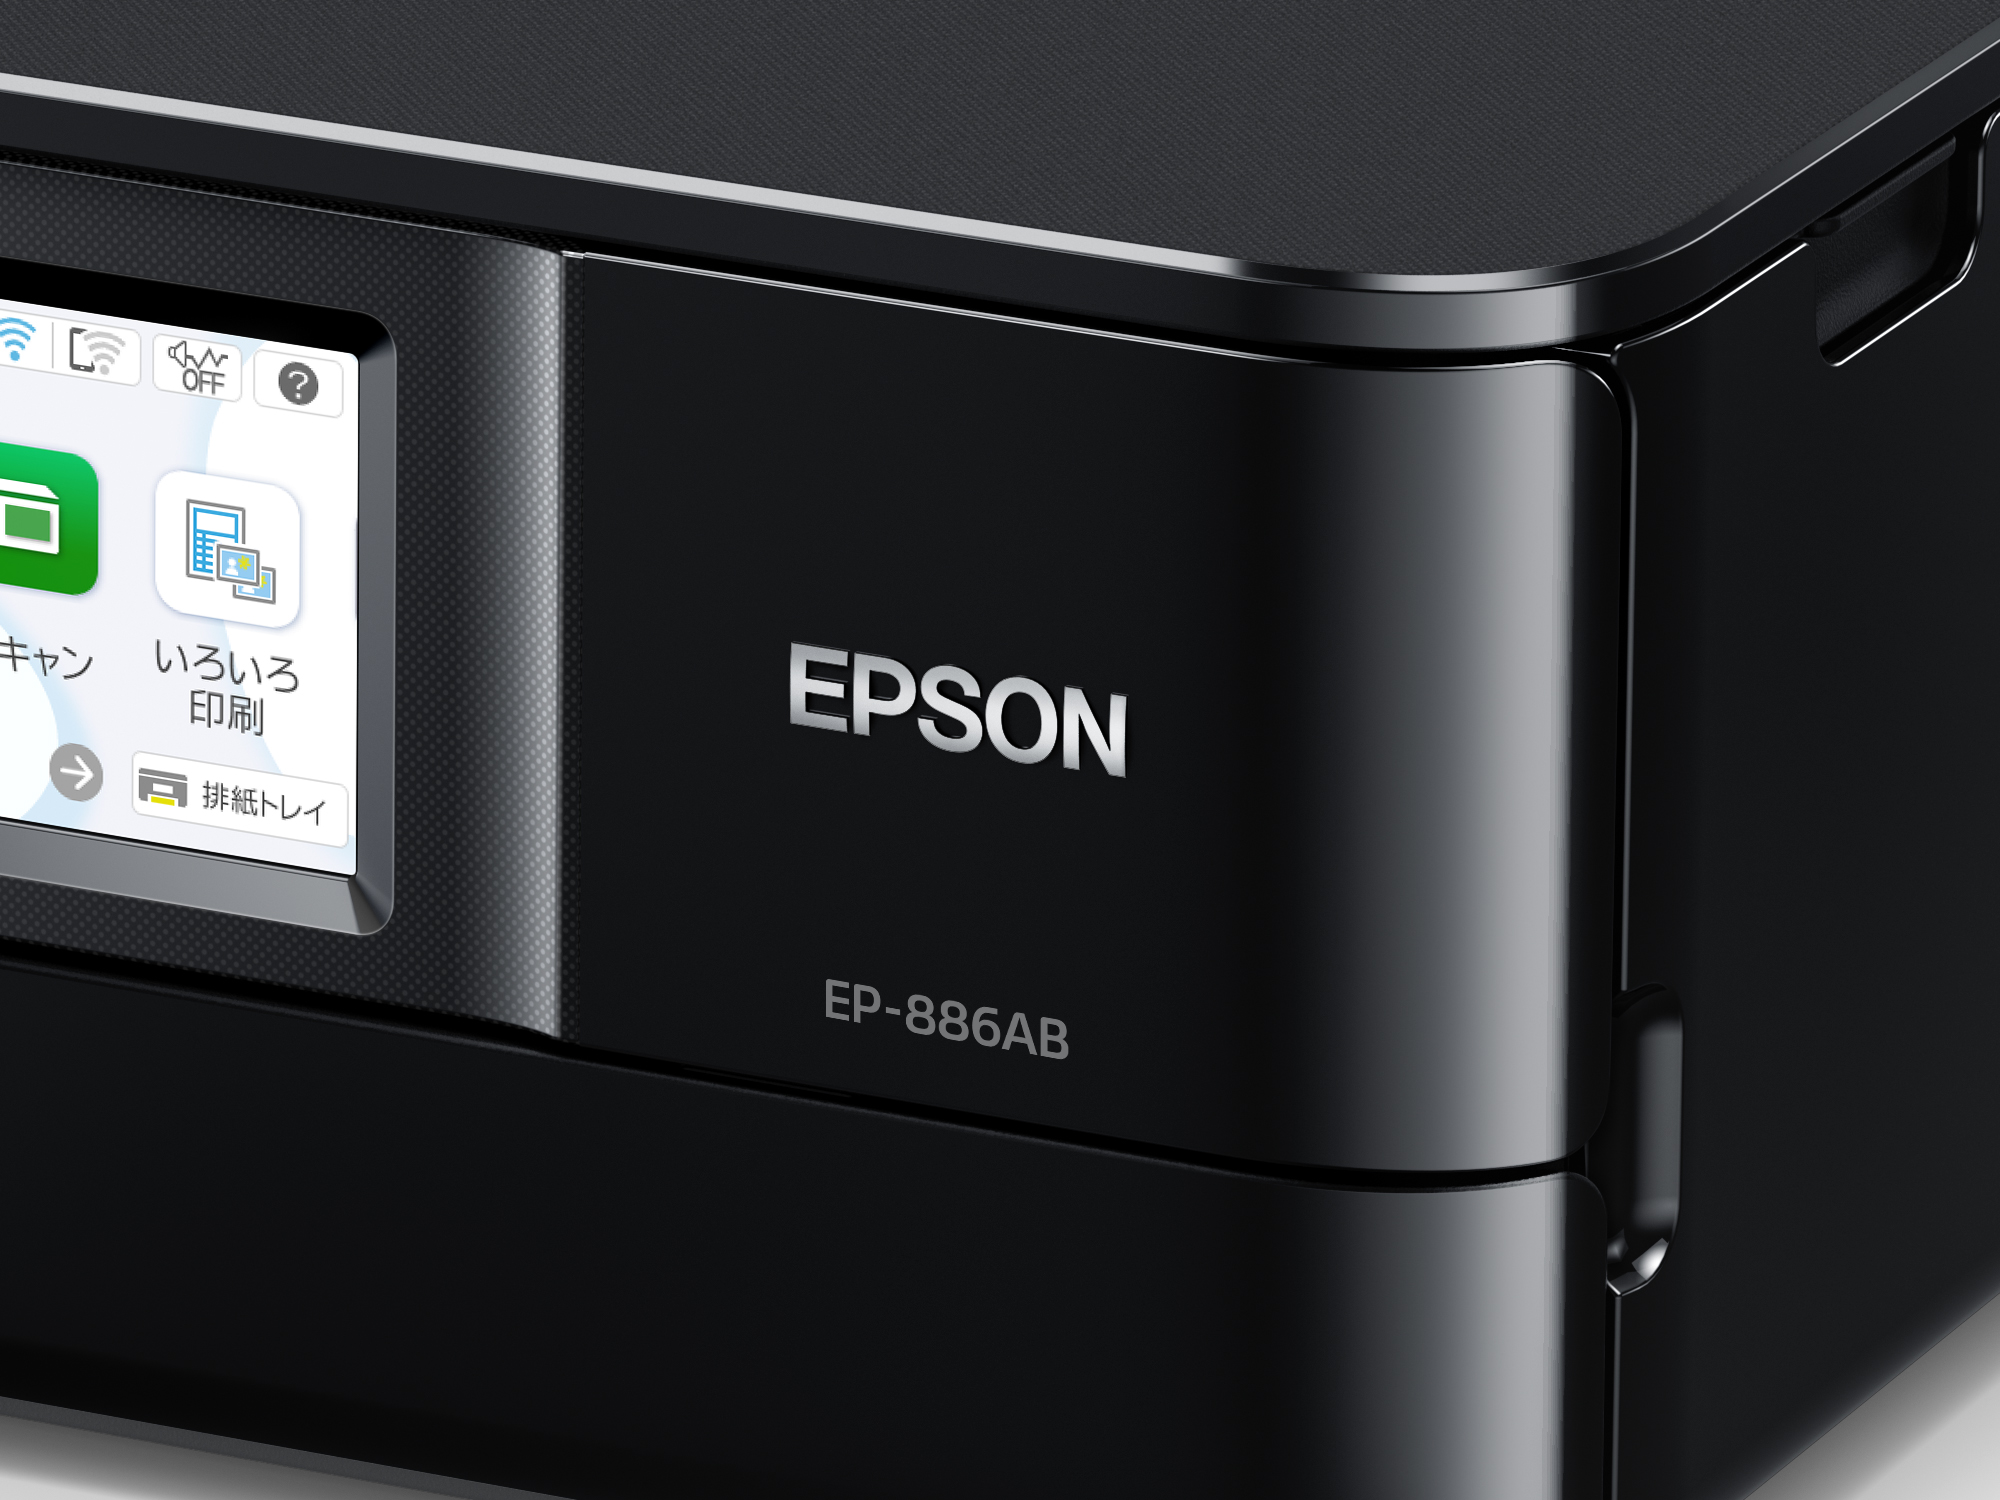 EPSON エプソン カラリオ EP-886AB A4カラーインクジェット複合機